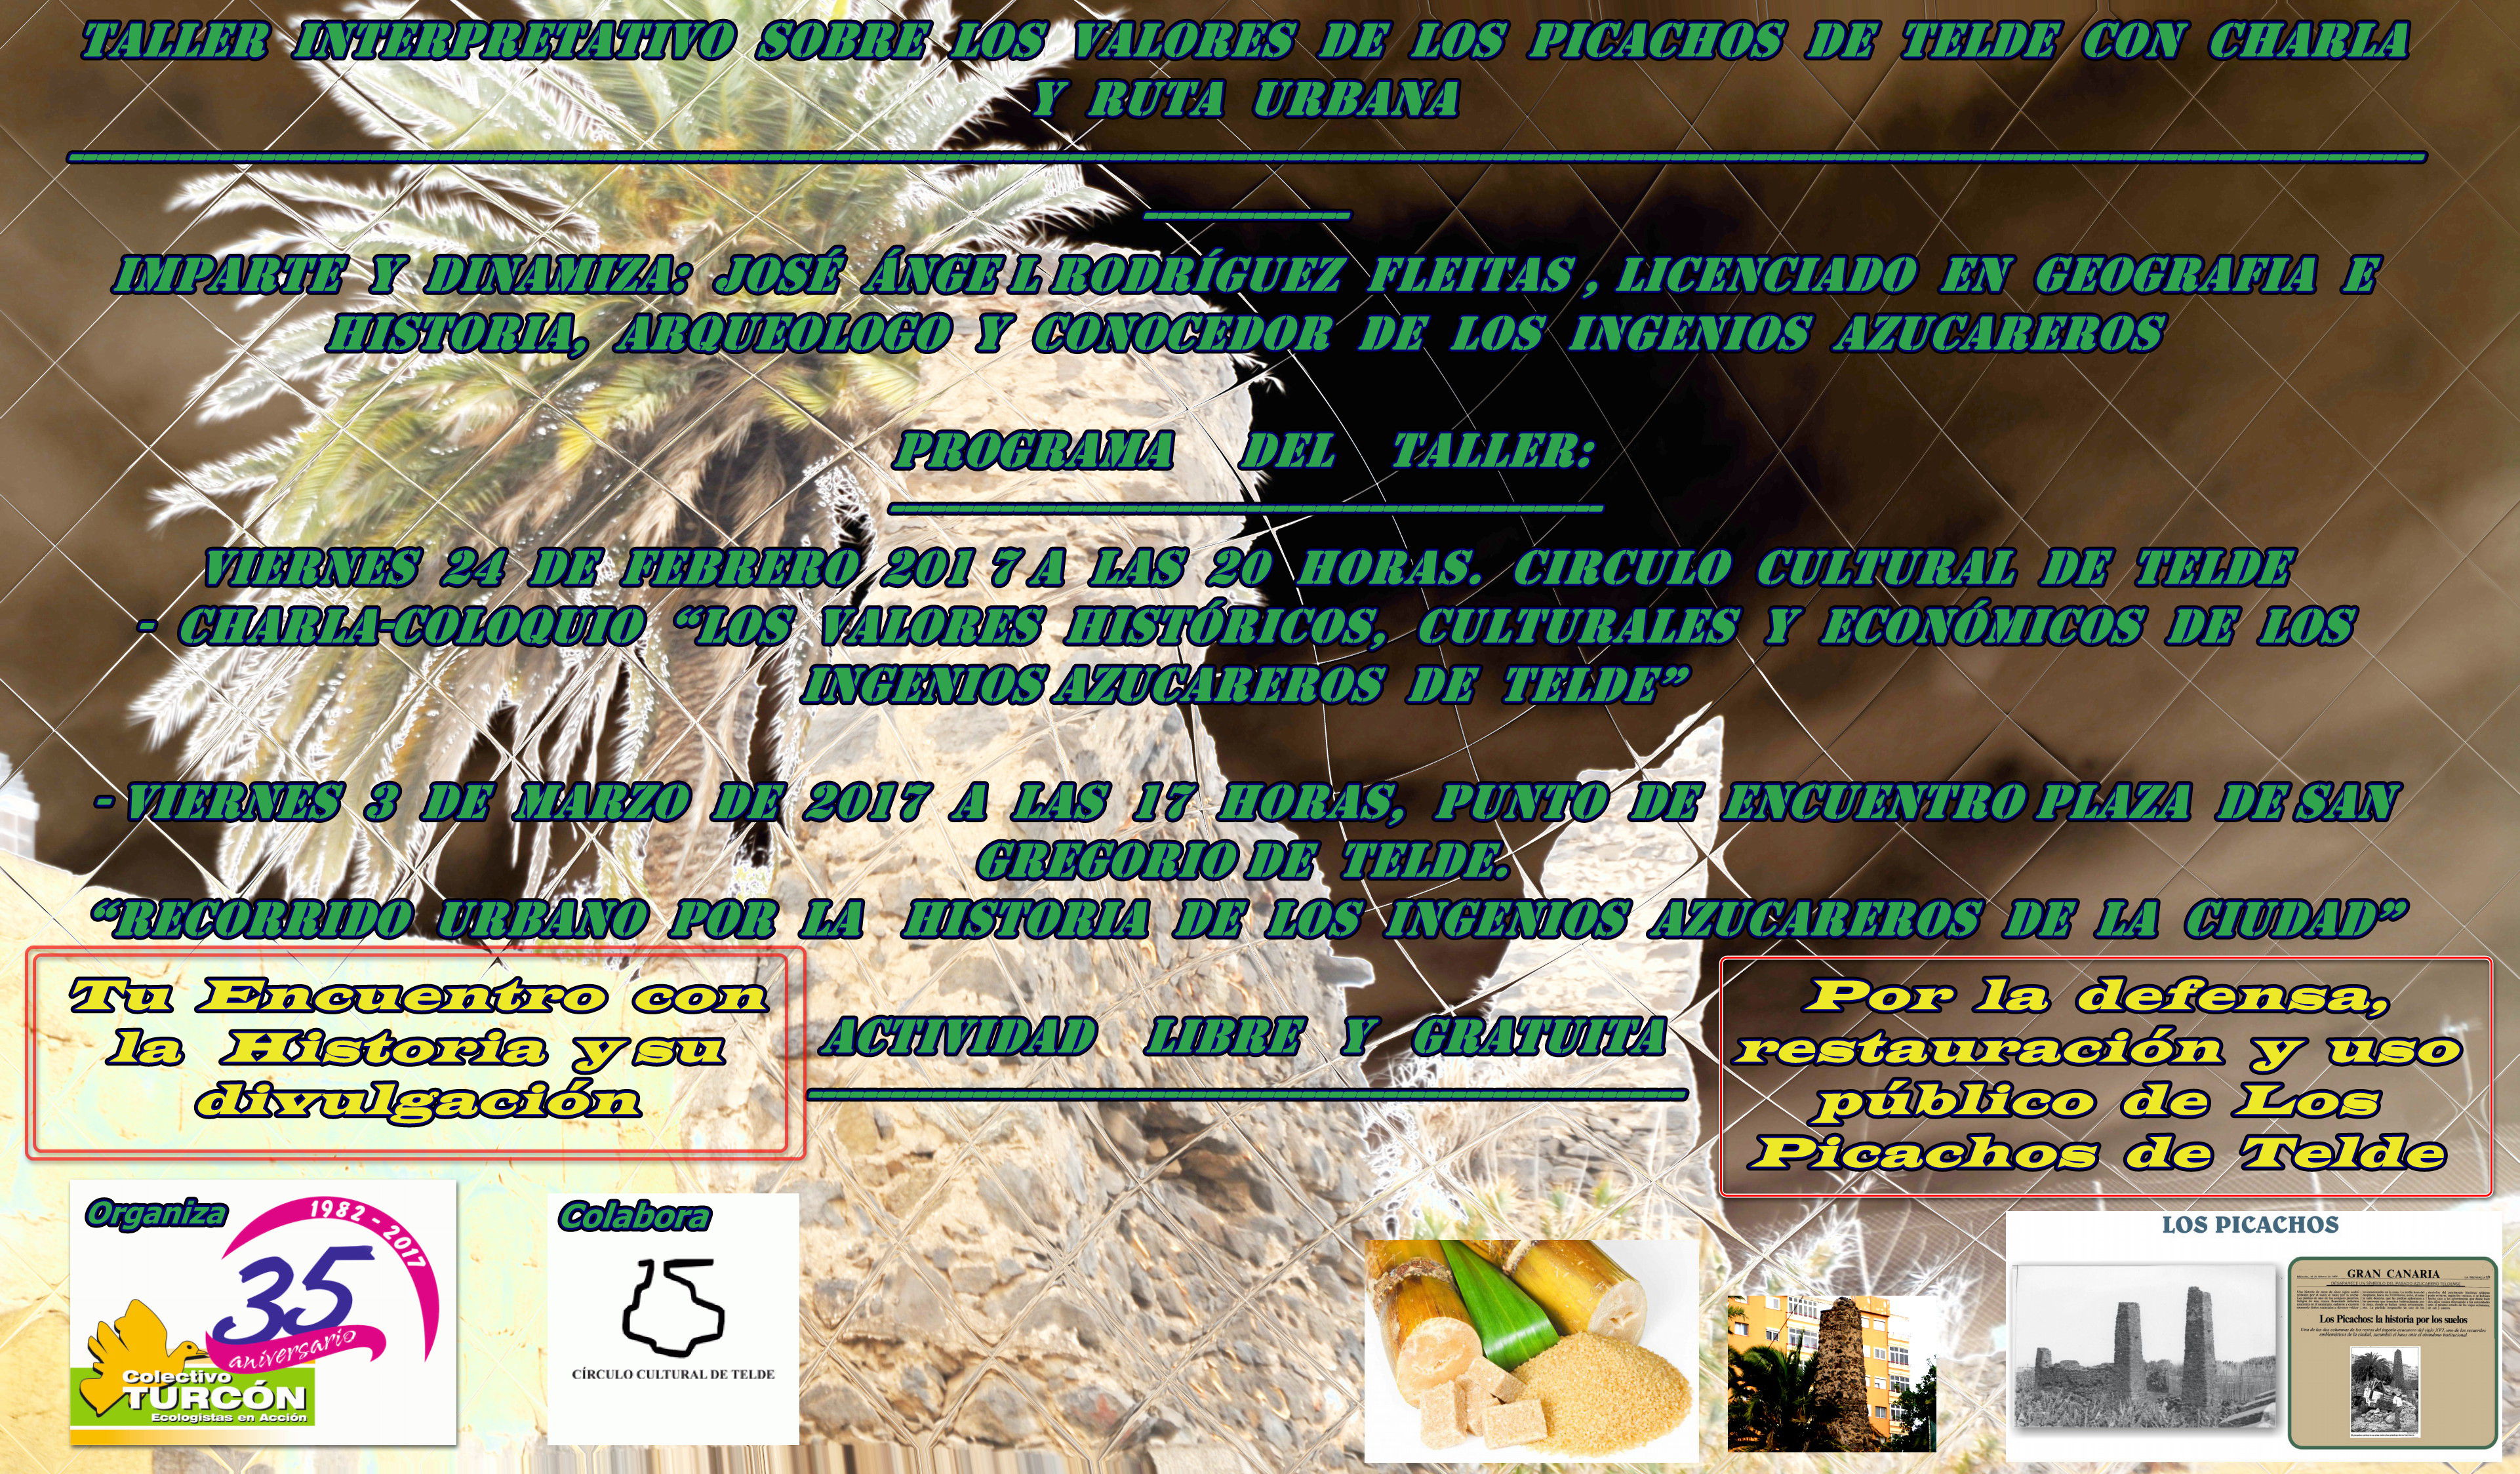 Cartel del Taller Interpretativo sobre Los Picachos